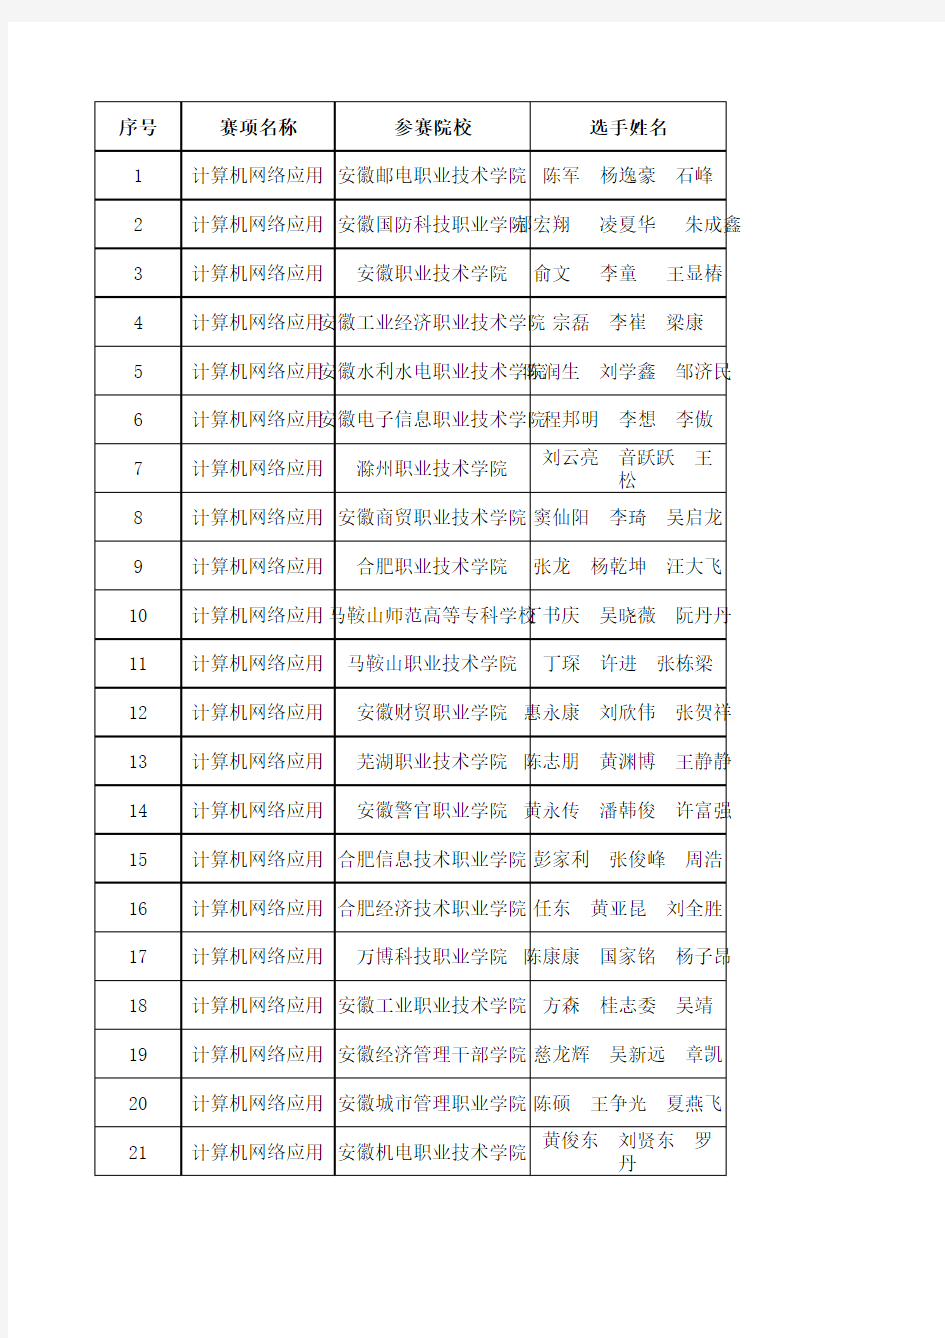 2015年安徽省职业技能大赛获奖名单(计算机网络应用)